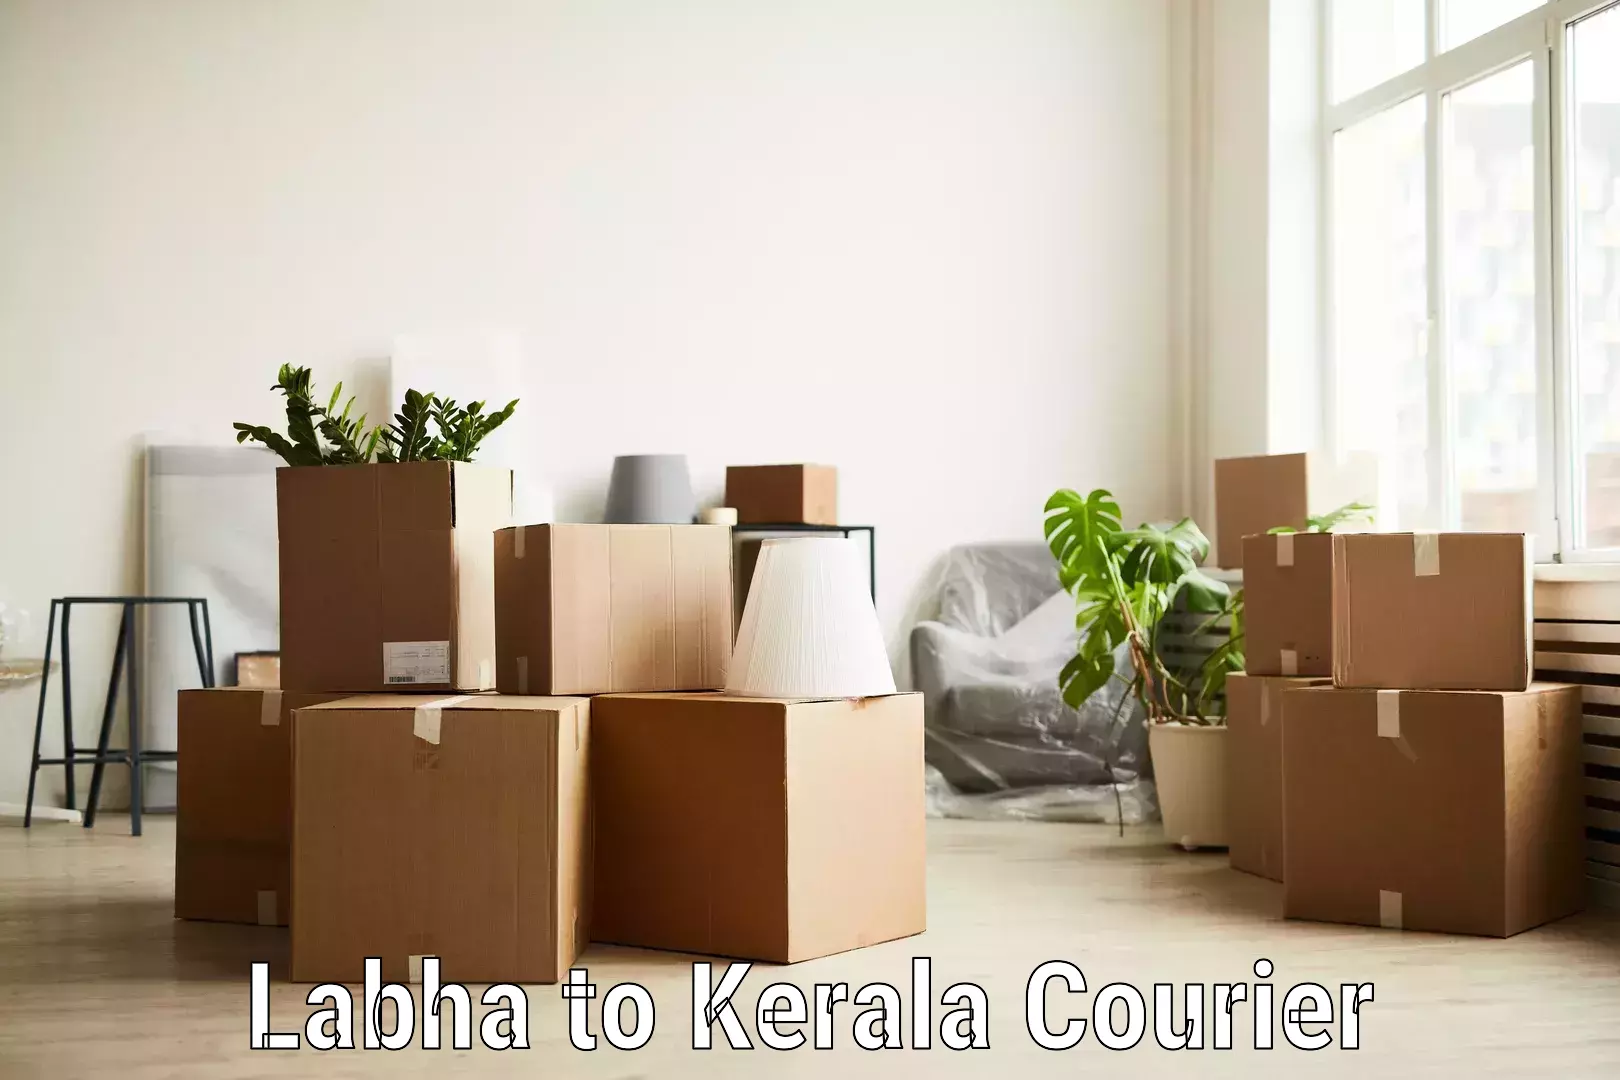 Express package handling Labha to Kerala